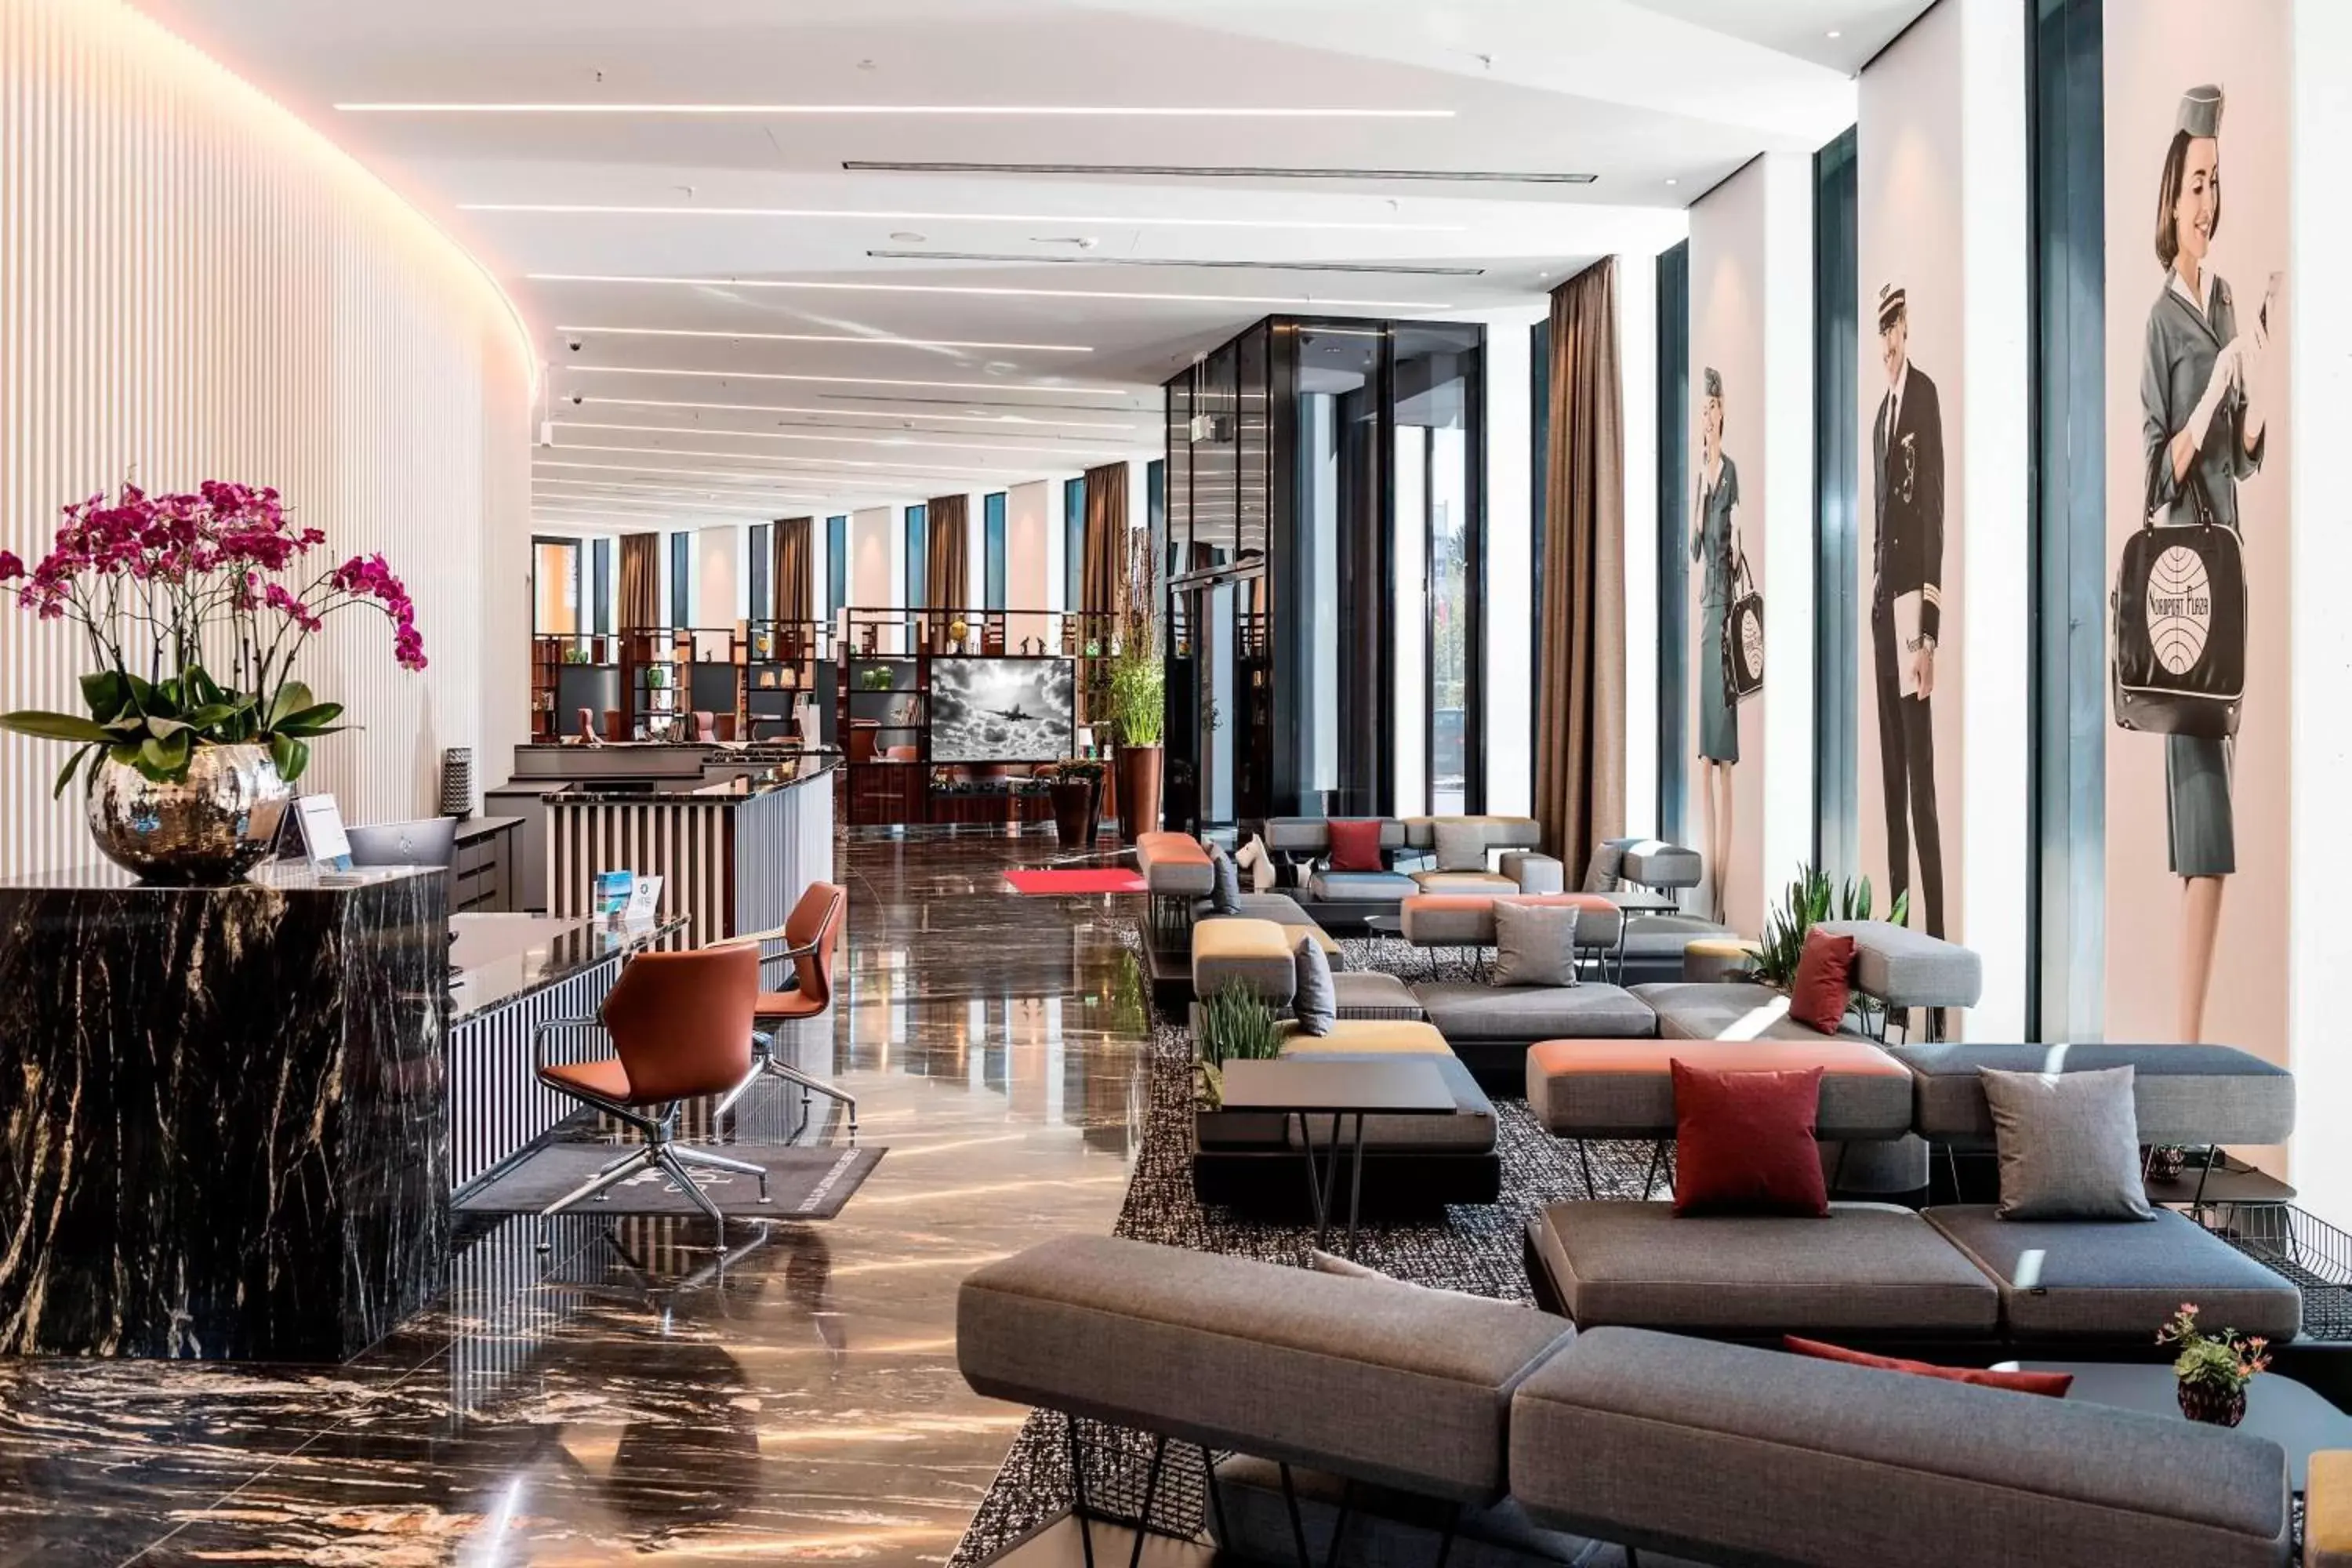 Lobby or reception, Lounge/Bar in Airport Plaza Hotel Hamburg, vorher bekannt als Nordport Plaza Hotel